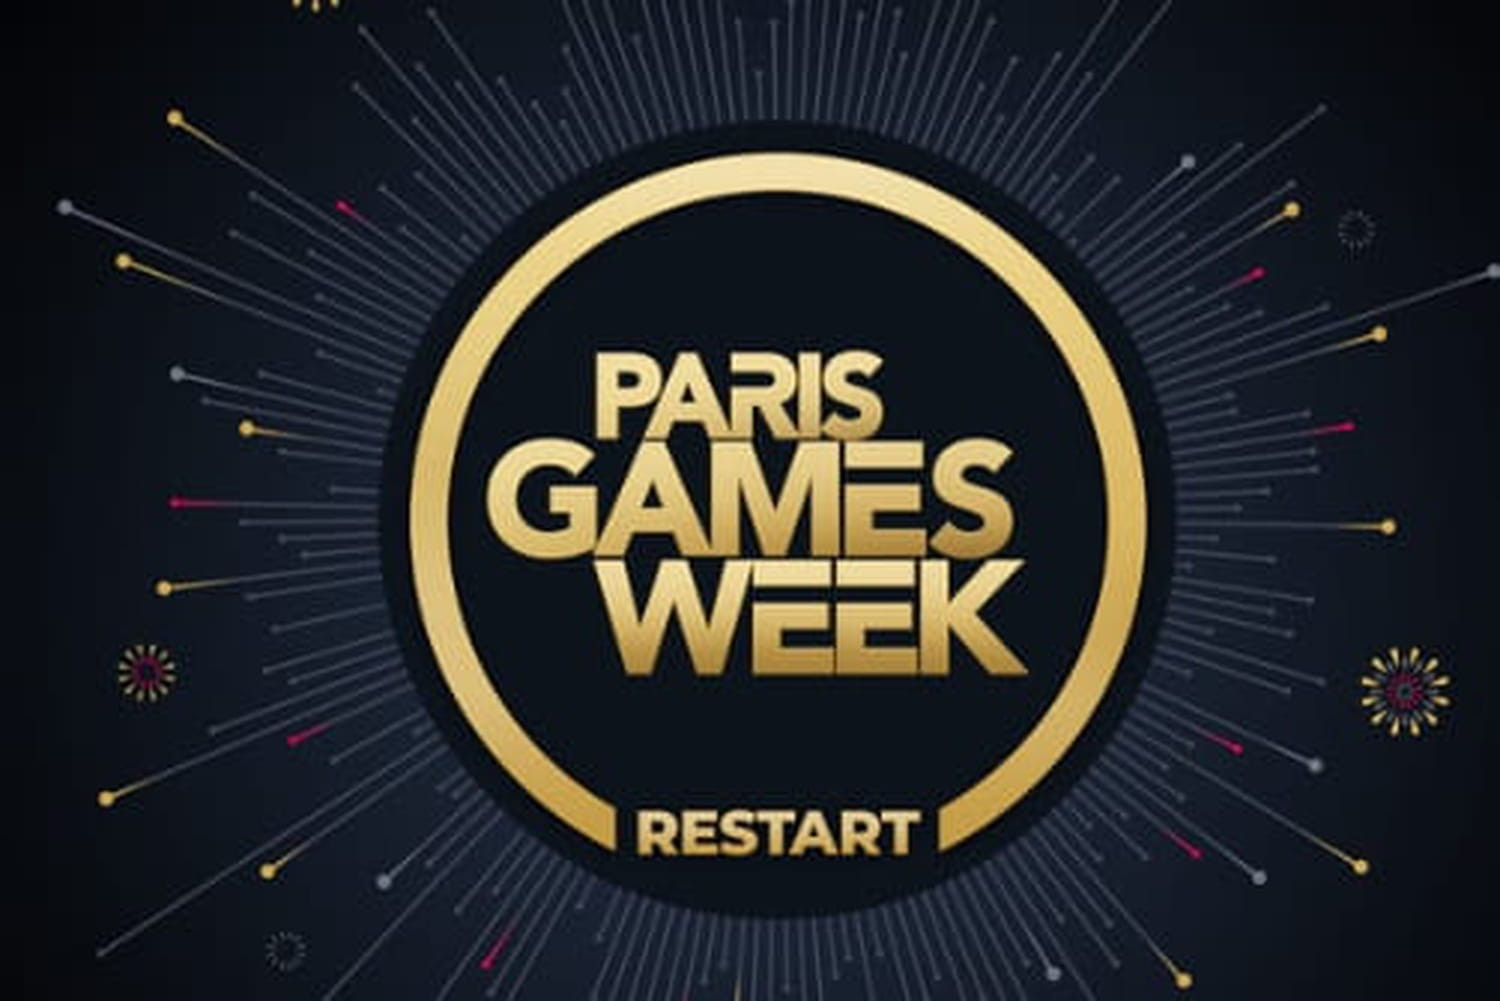 La paris Games Week de retour en mode restart